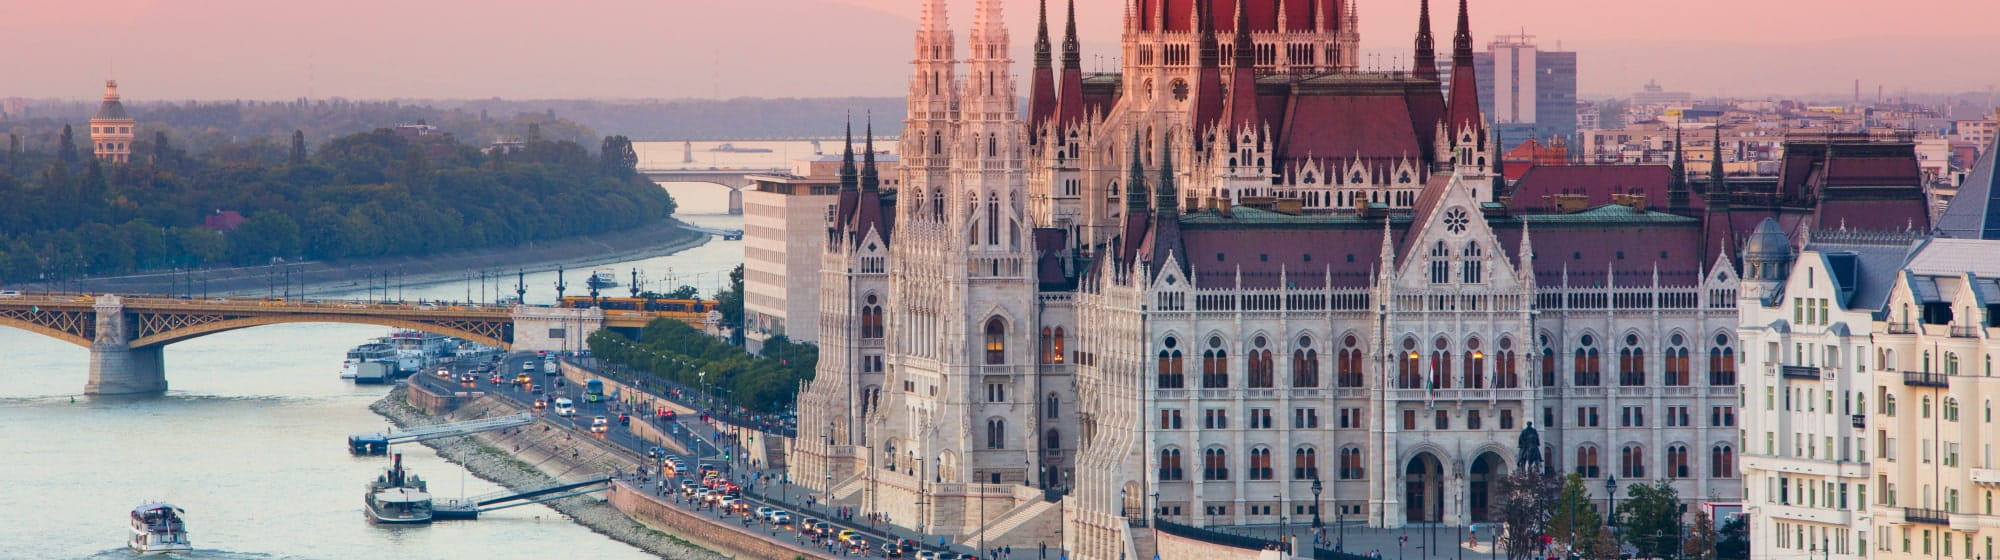 Le danube traversant la ville de Budapest